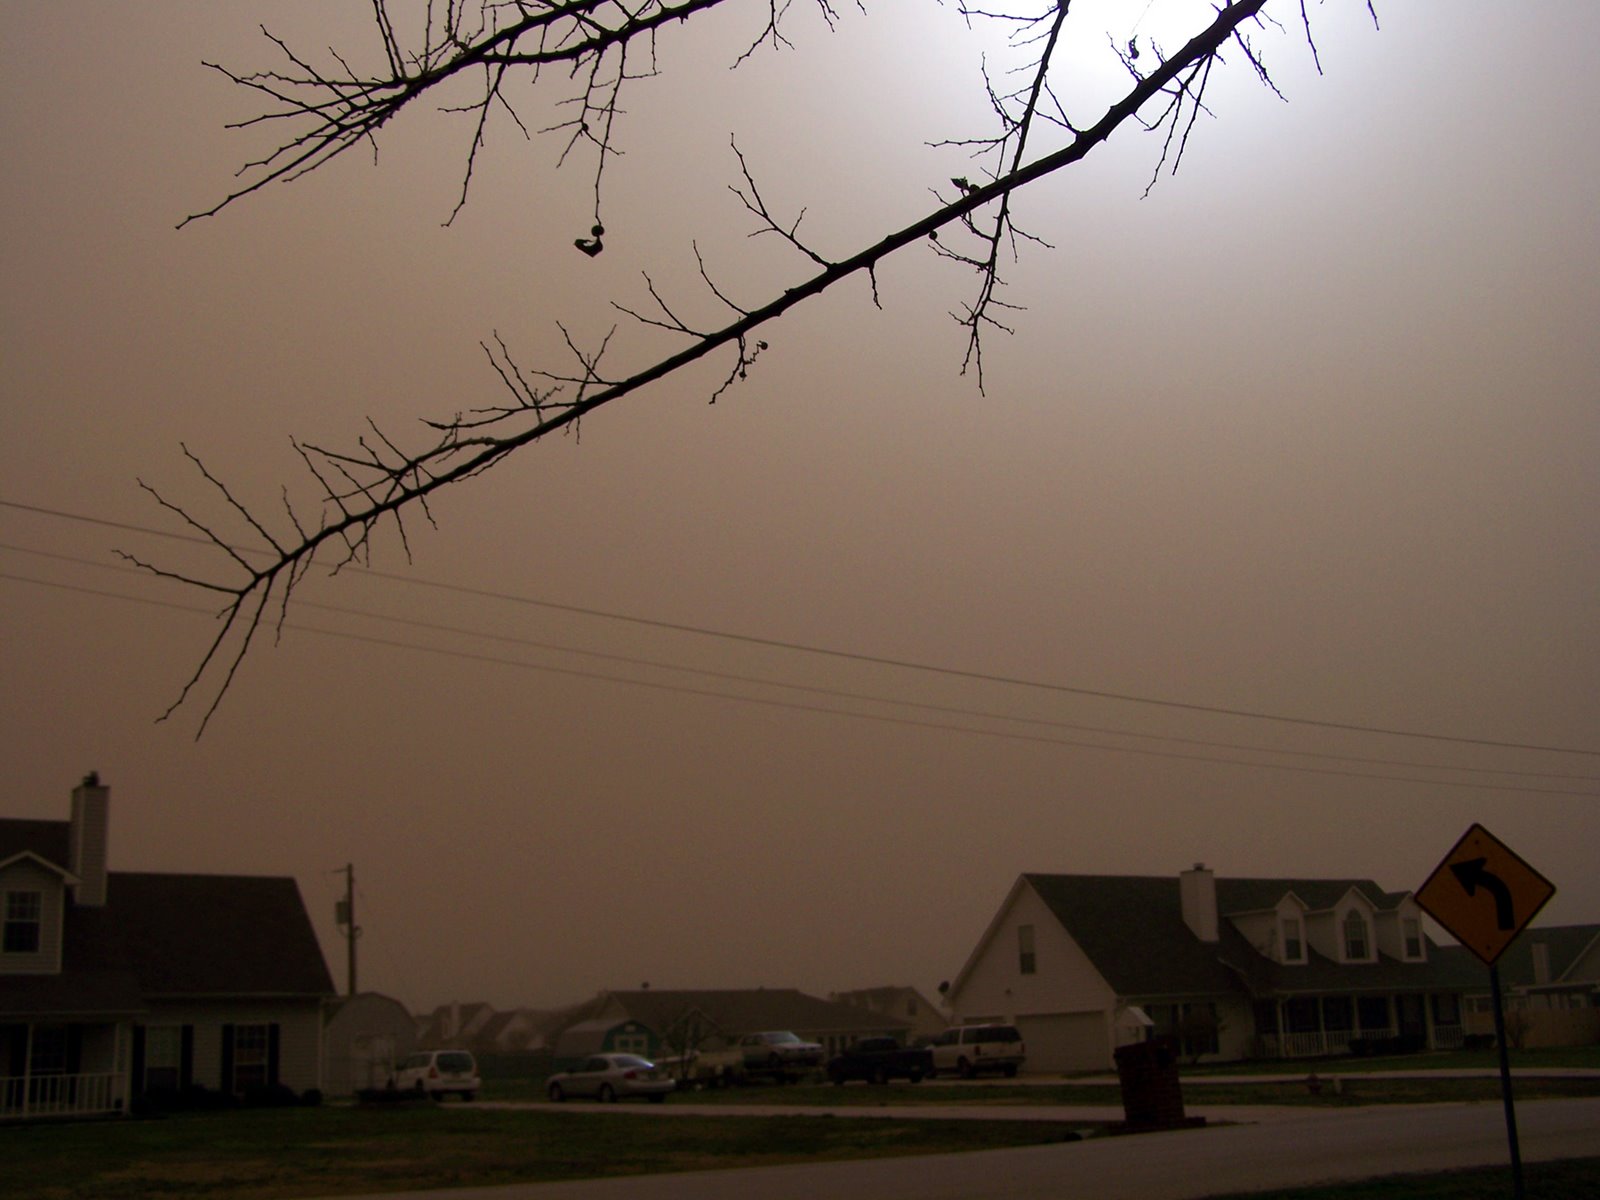 [Dust+storm+neighbors+house.jpg]